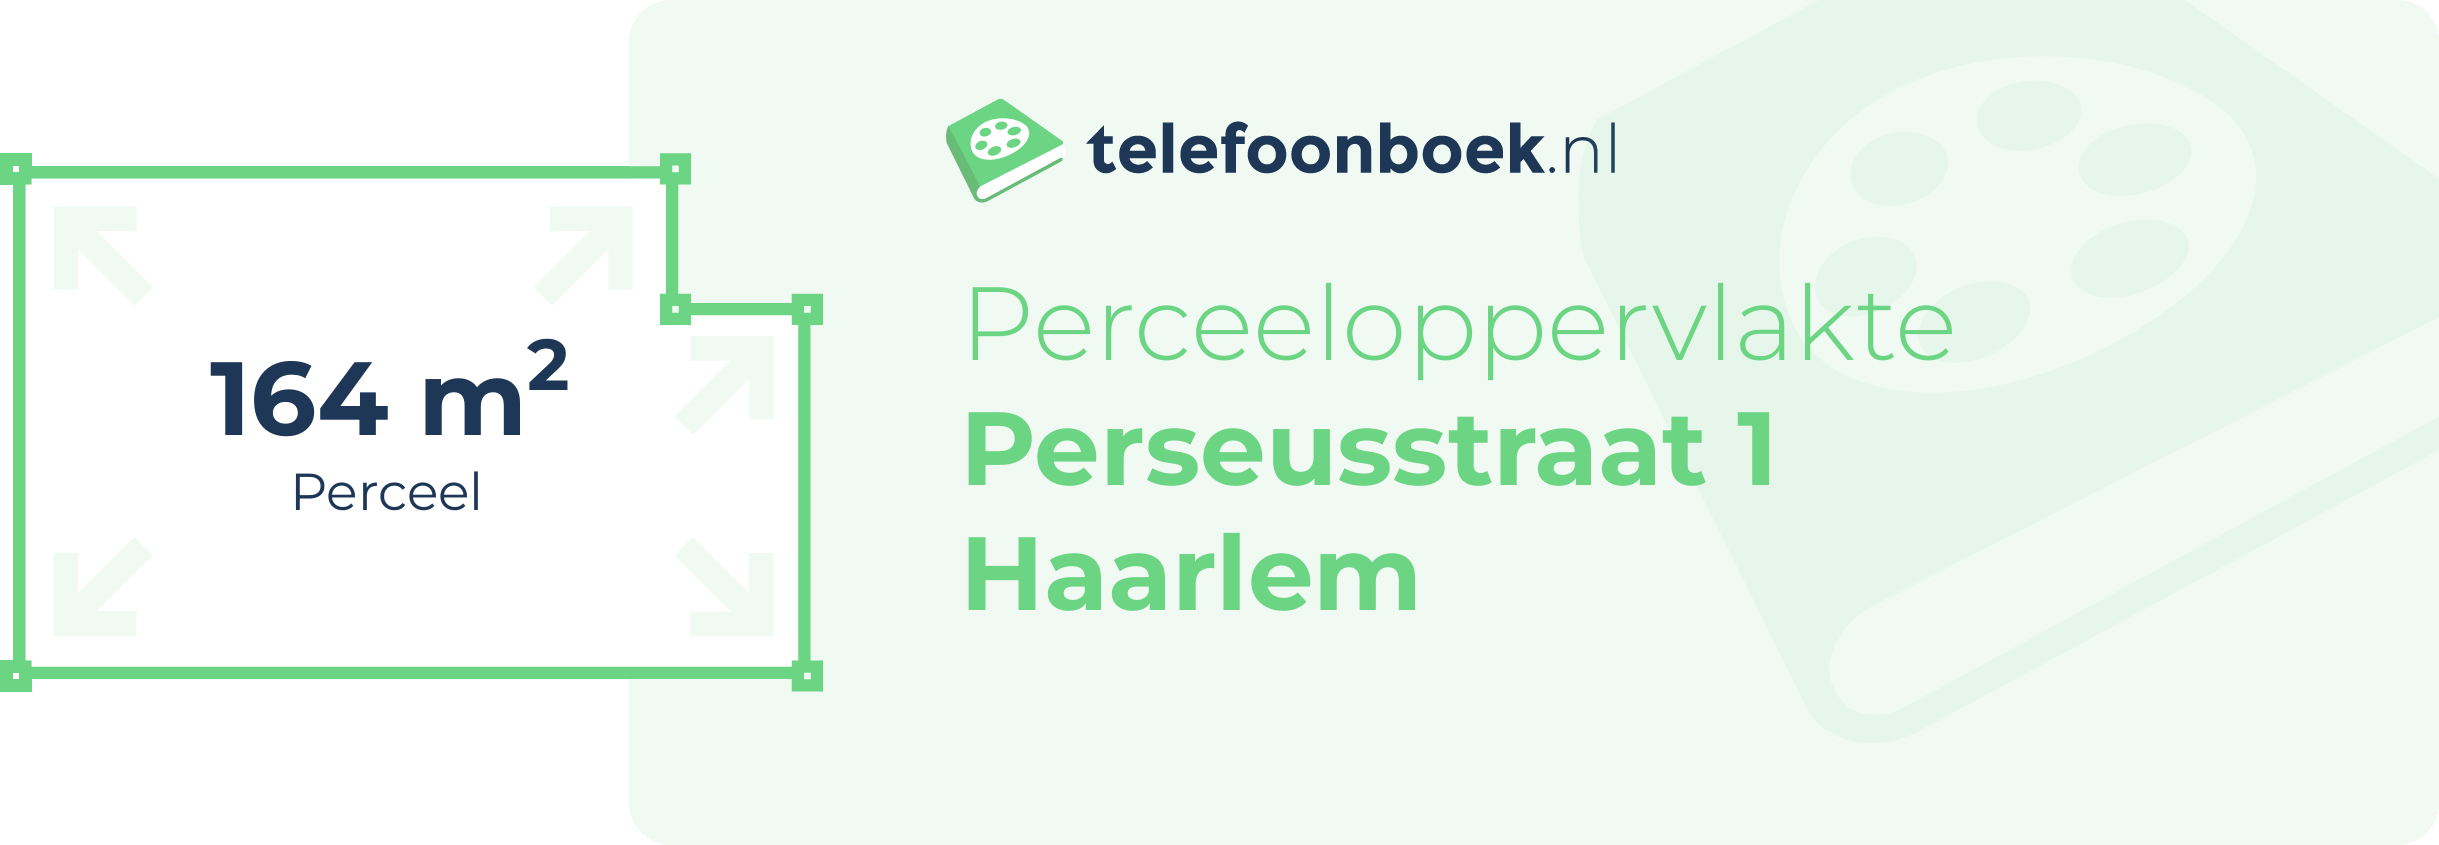 Perceeloppervlakte Perseusstraat 1 Haarlem